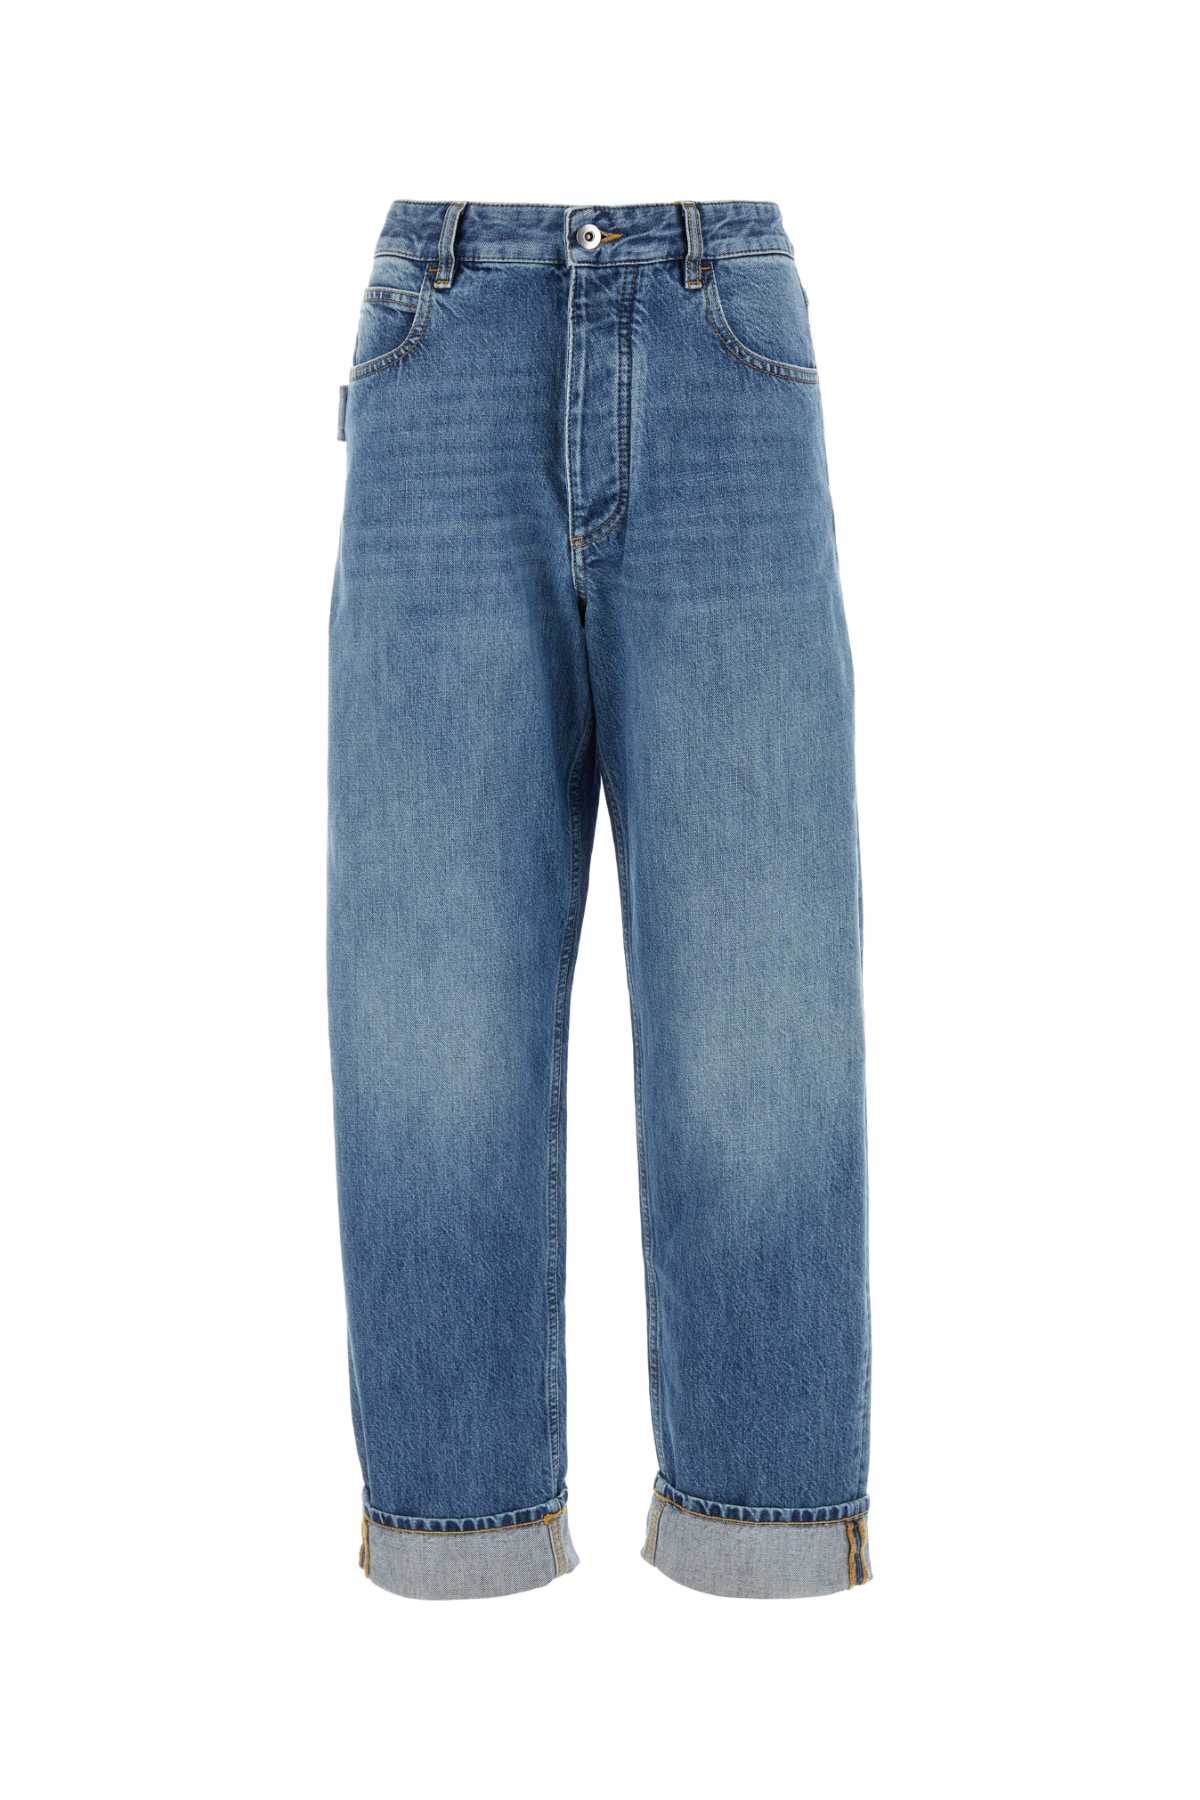 Shop Bottega Veneta Denim Jeans In Midblue